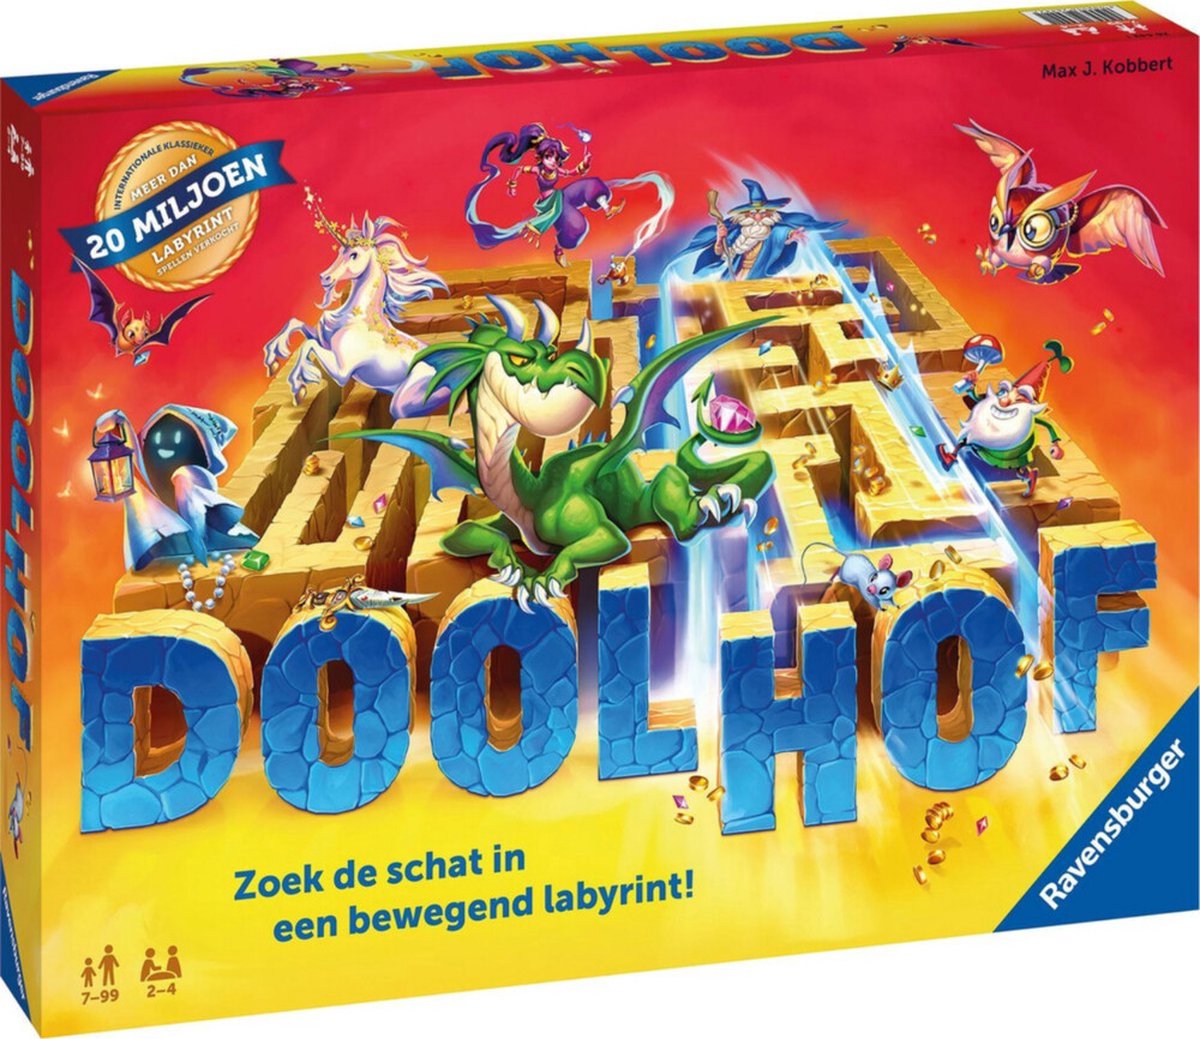 Ravensburger Spel Doolhof | Games